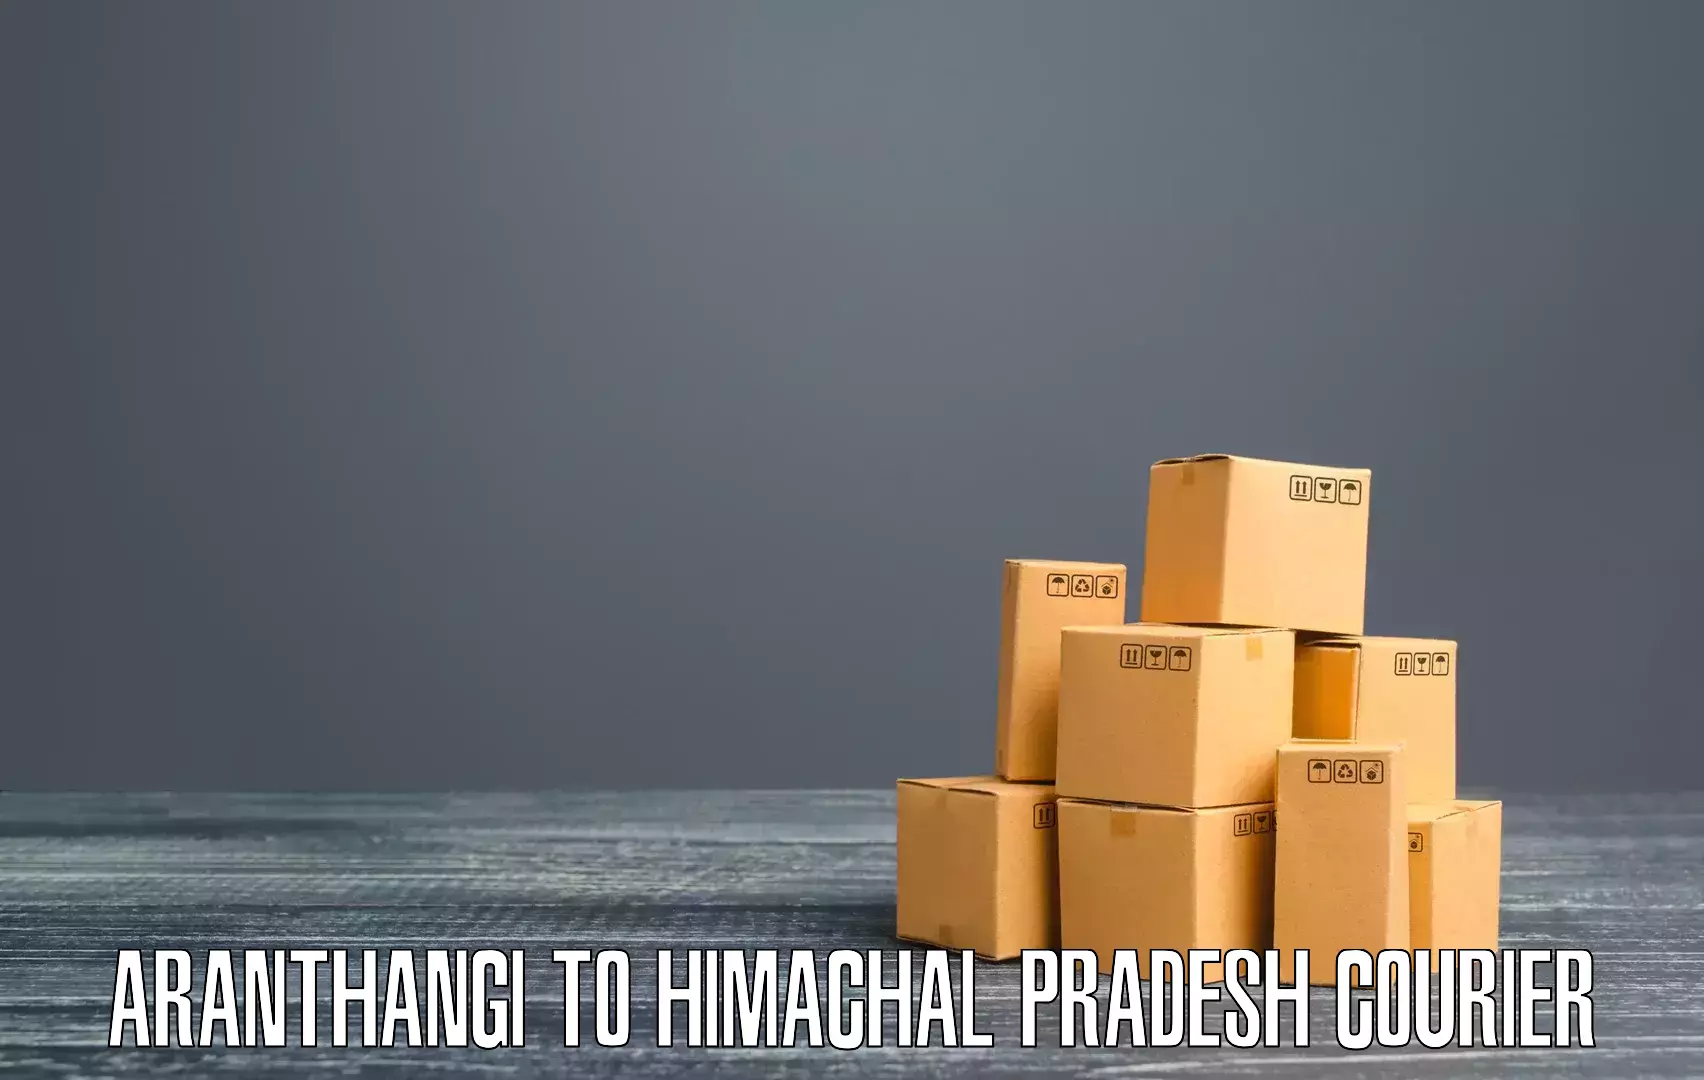 24/7 shipping services Aranthangi to Himachal Pradesh